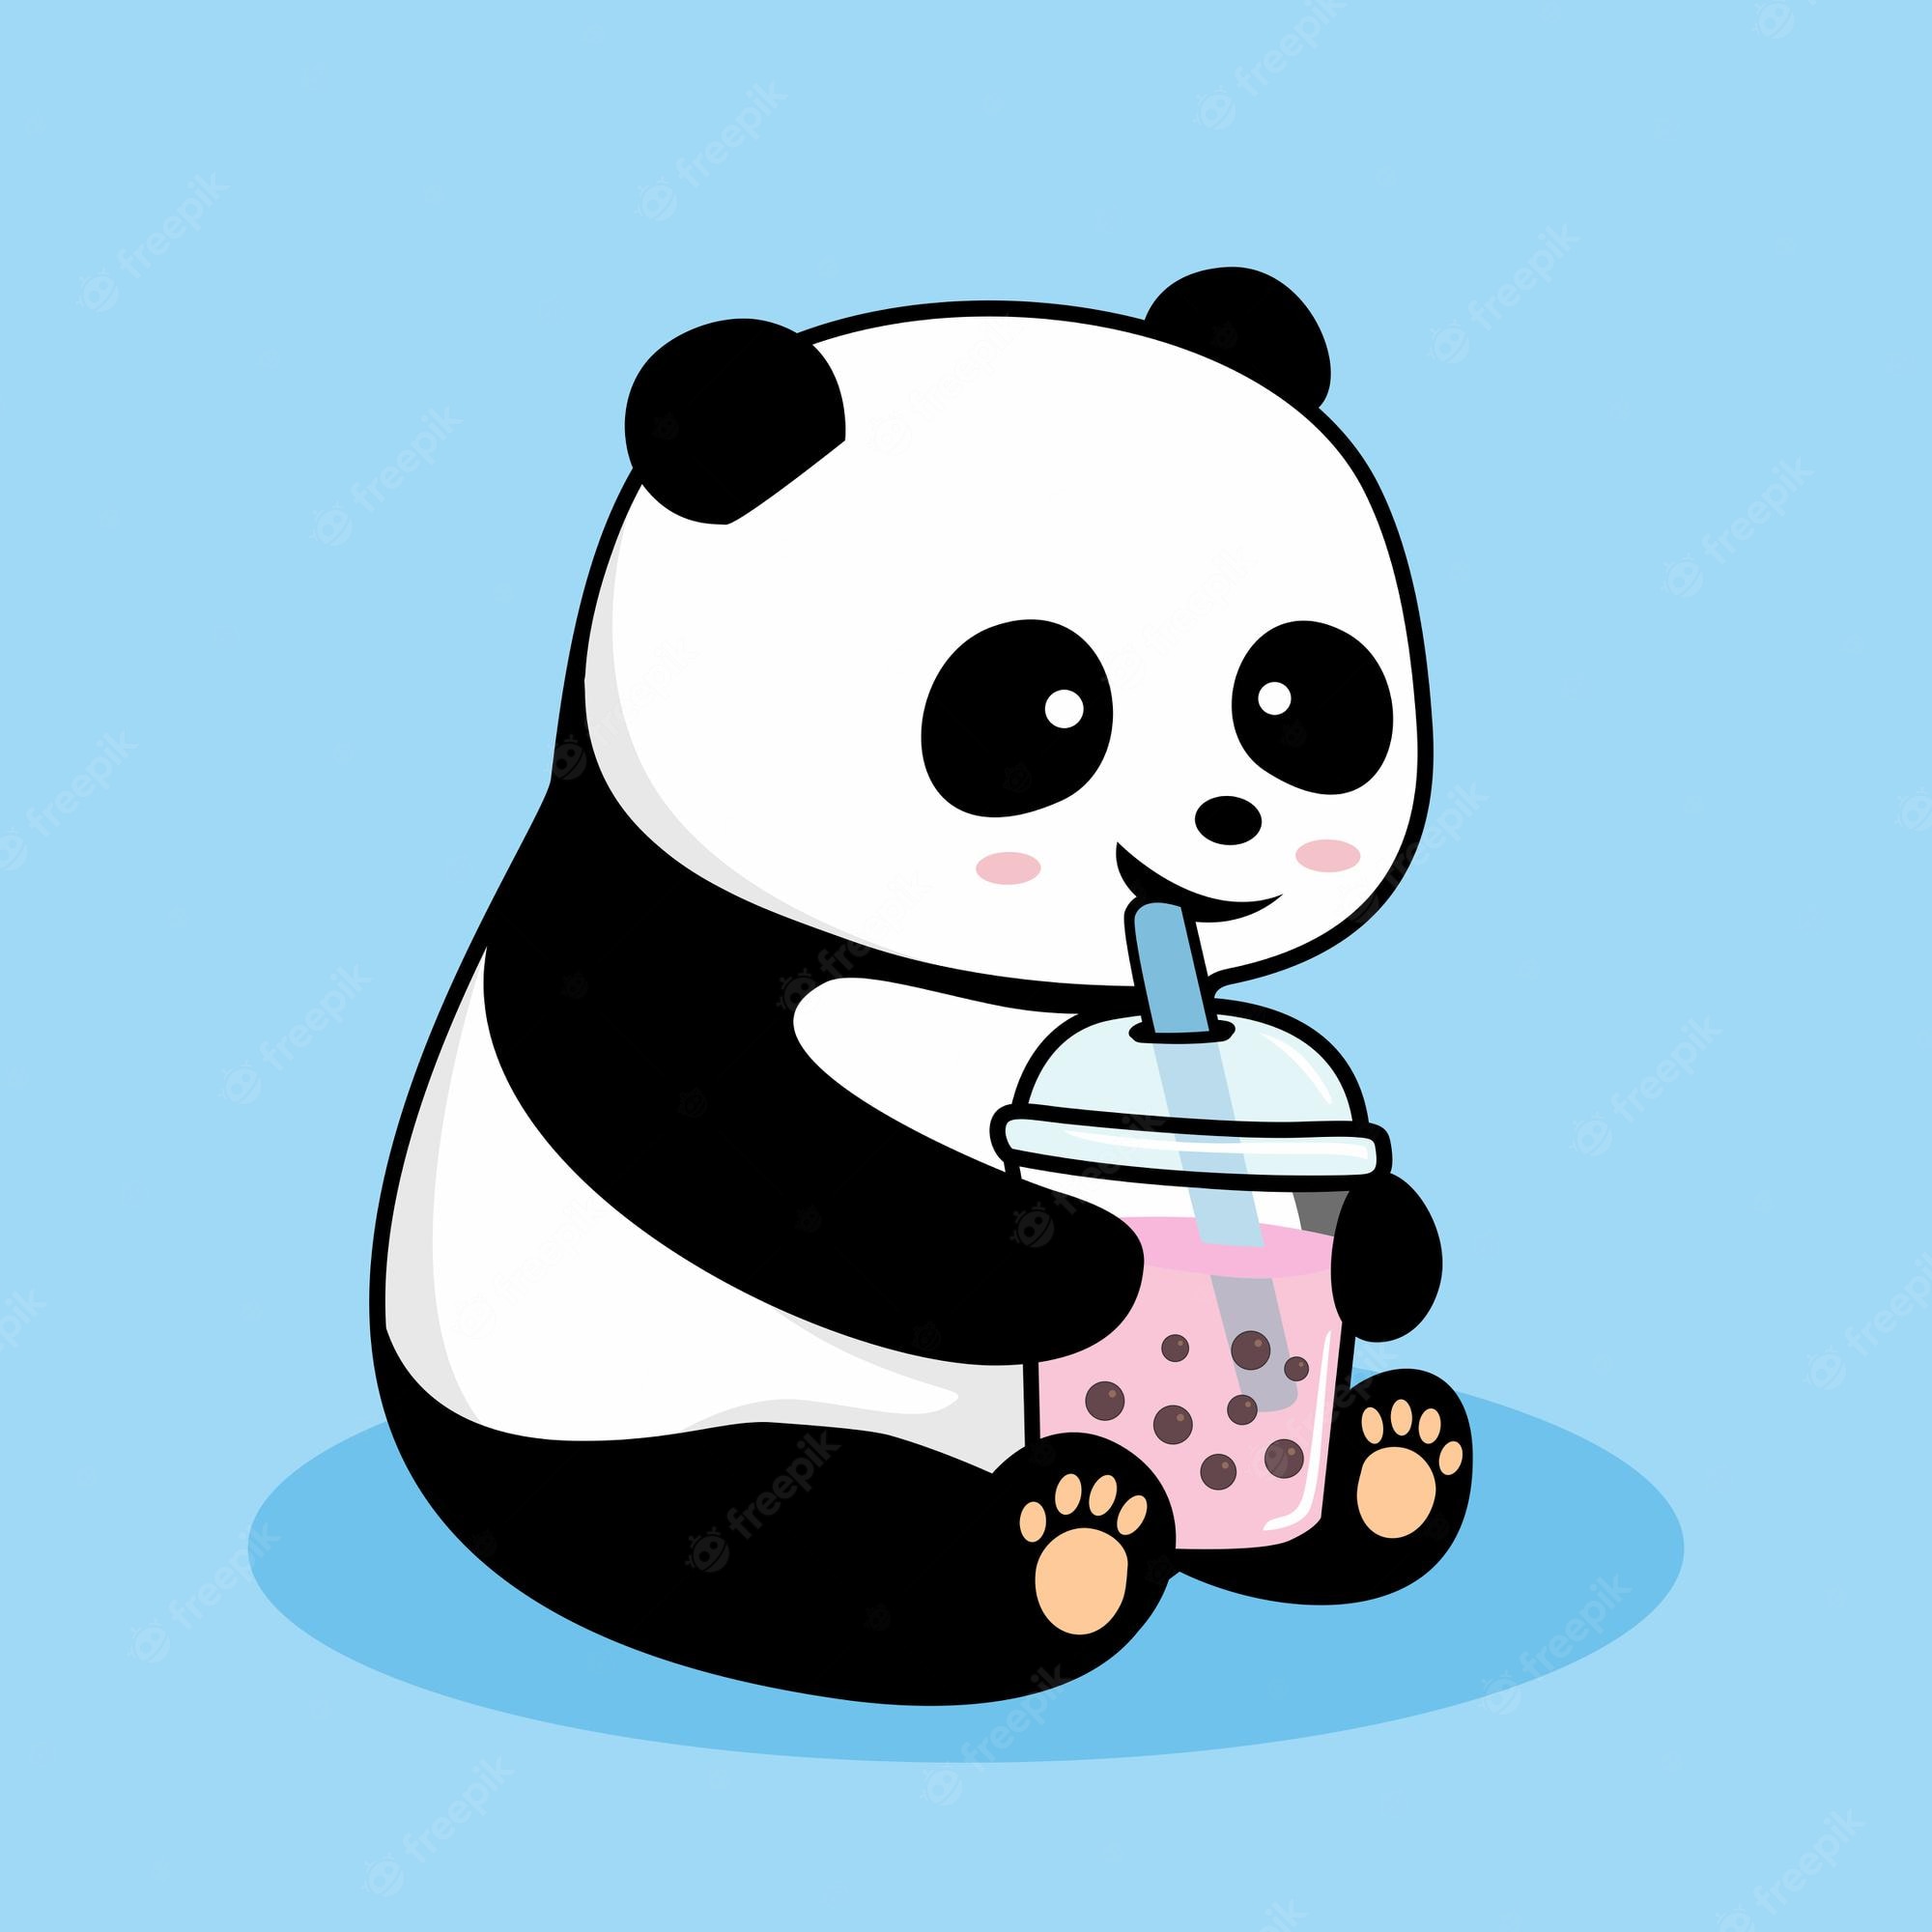 Premium Vector. Cute panda drinking boba cartoon